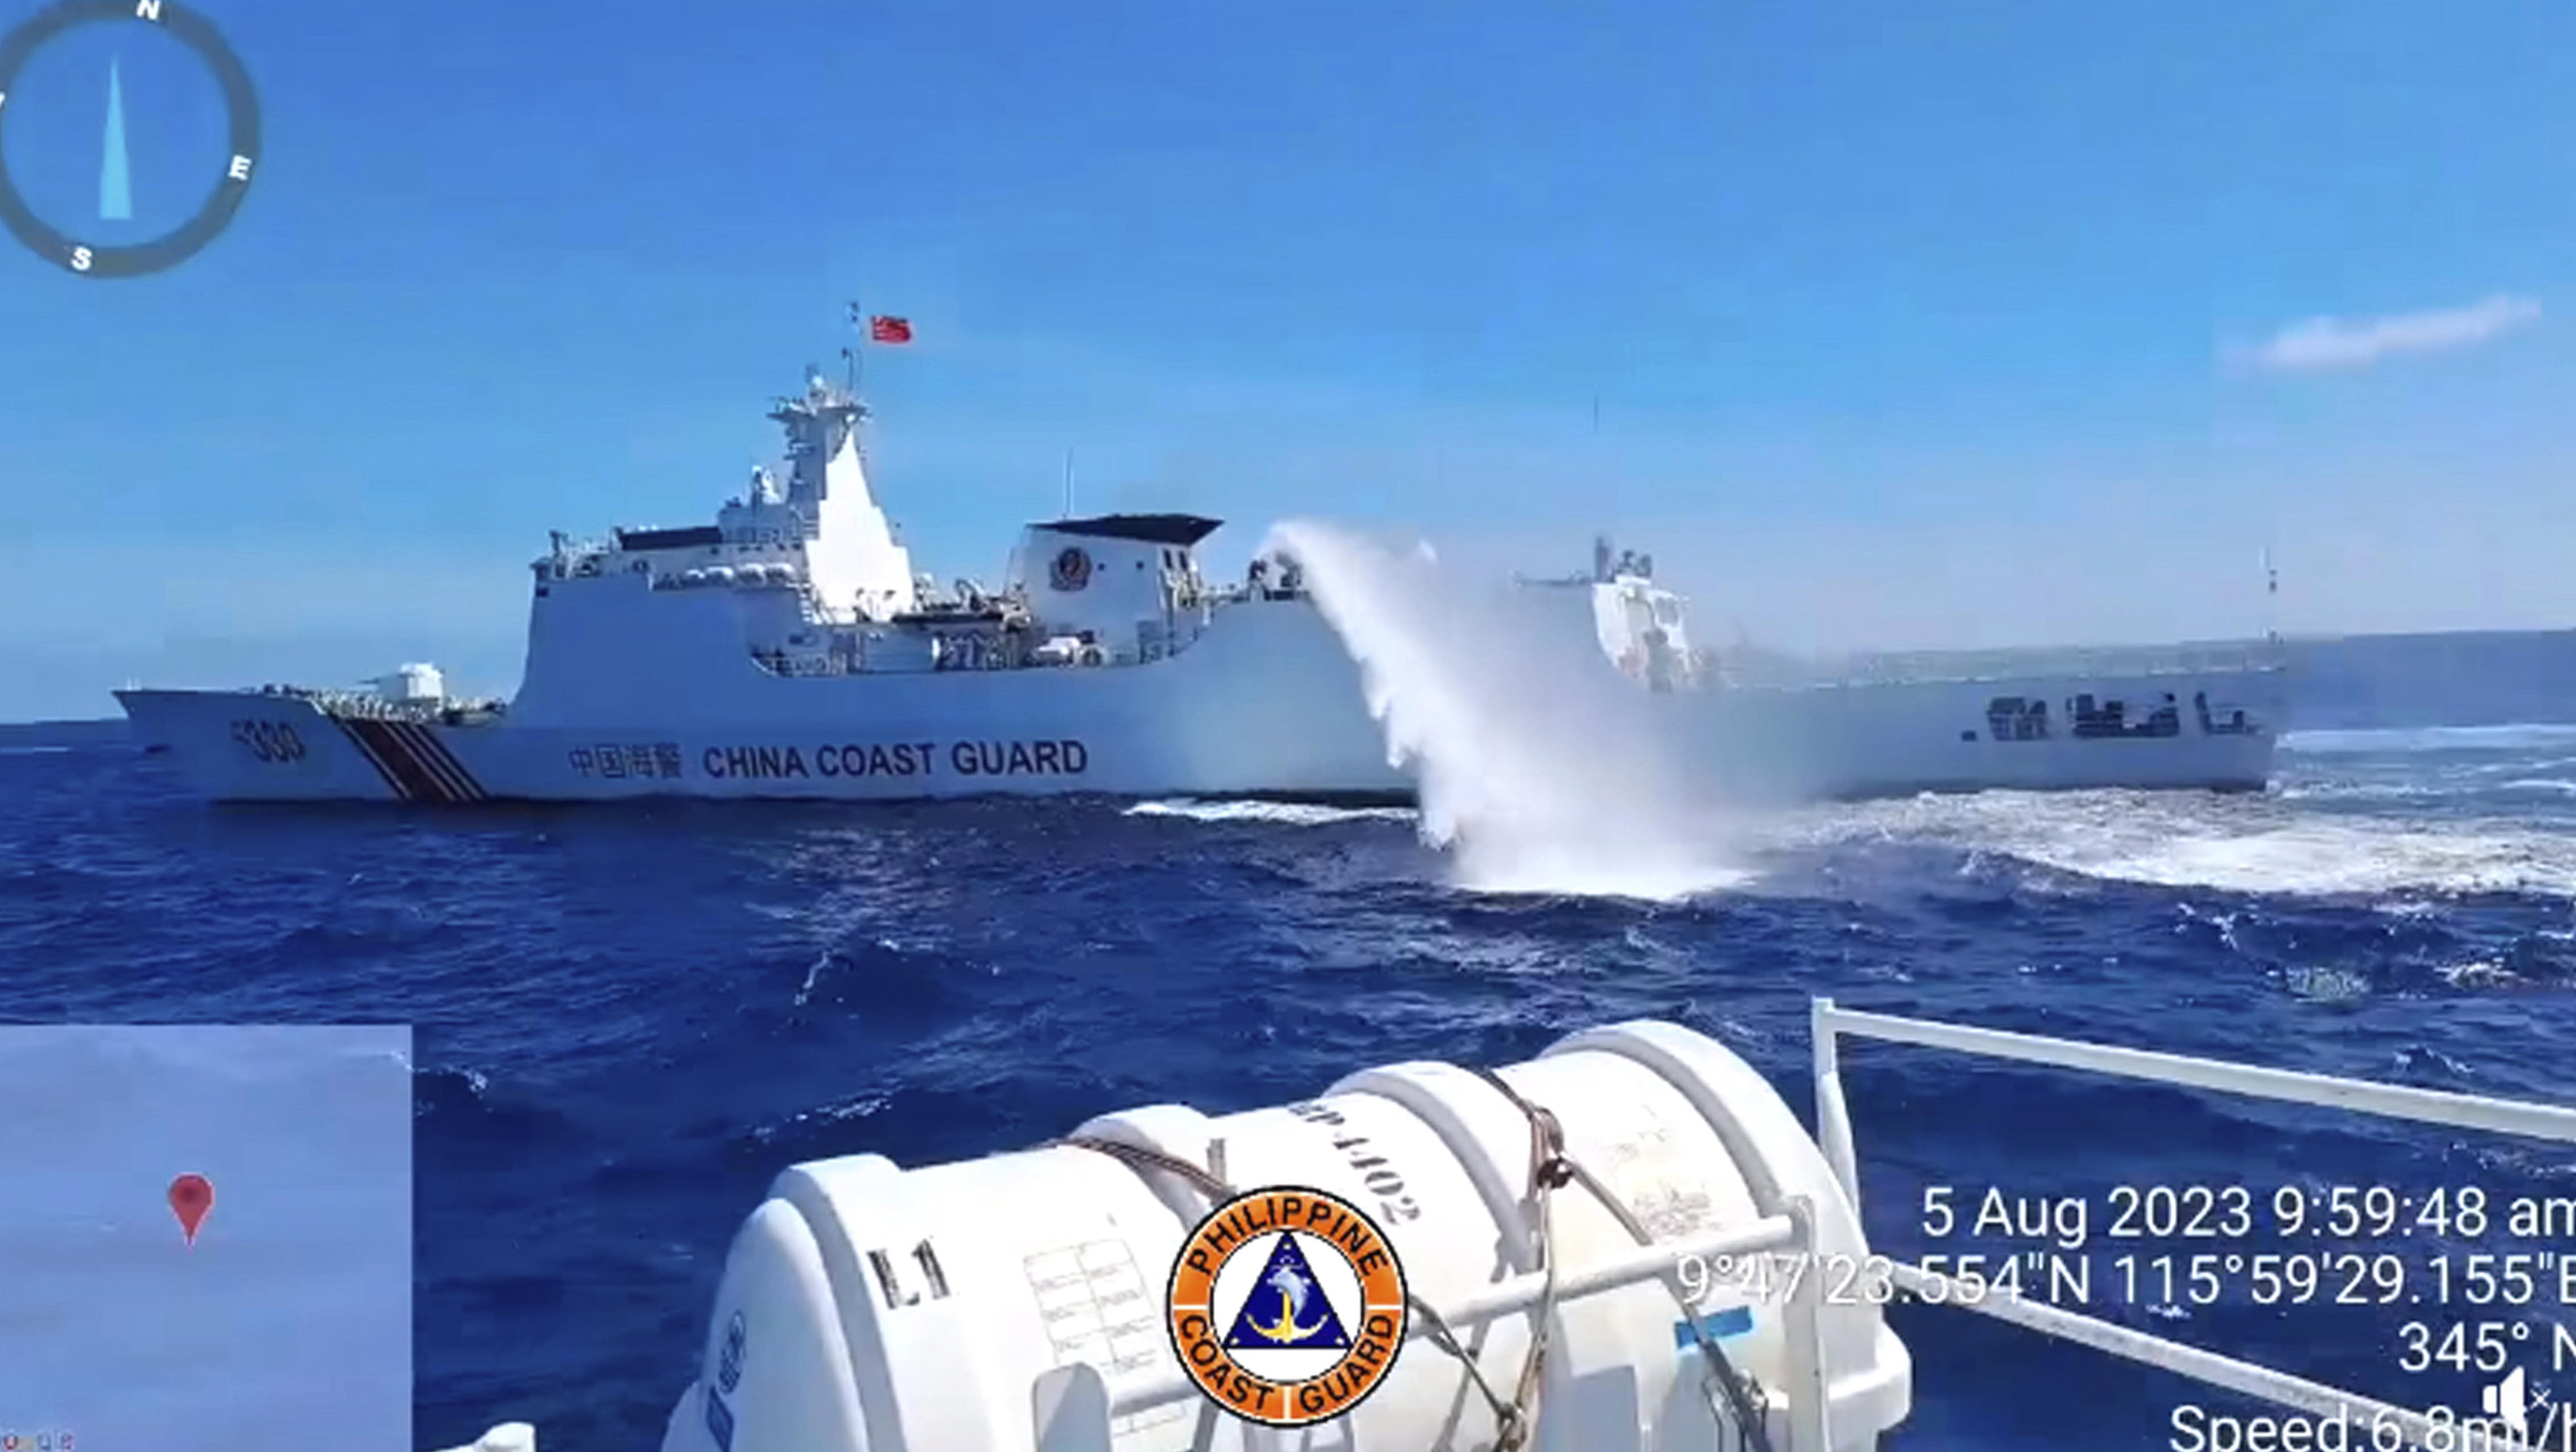 China Coast Guard fires water cannon at PH ships again